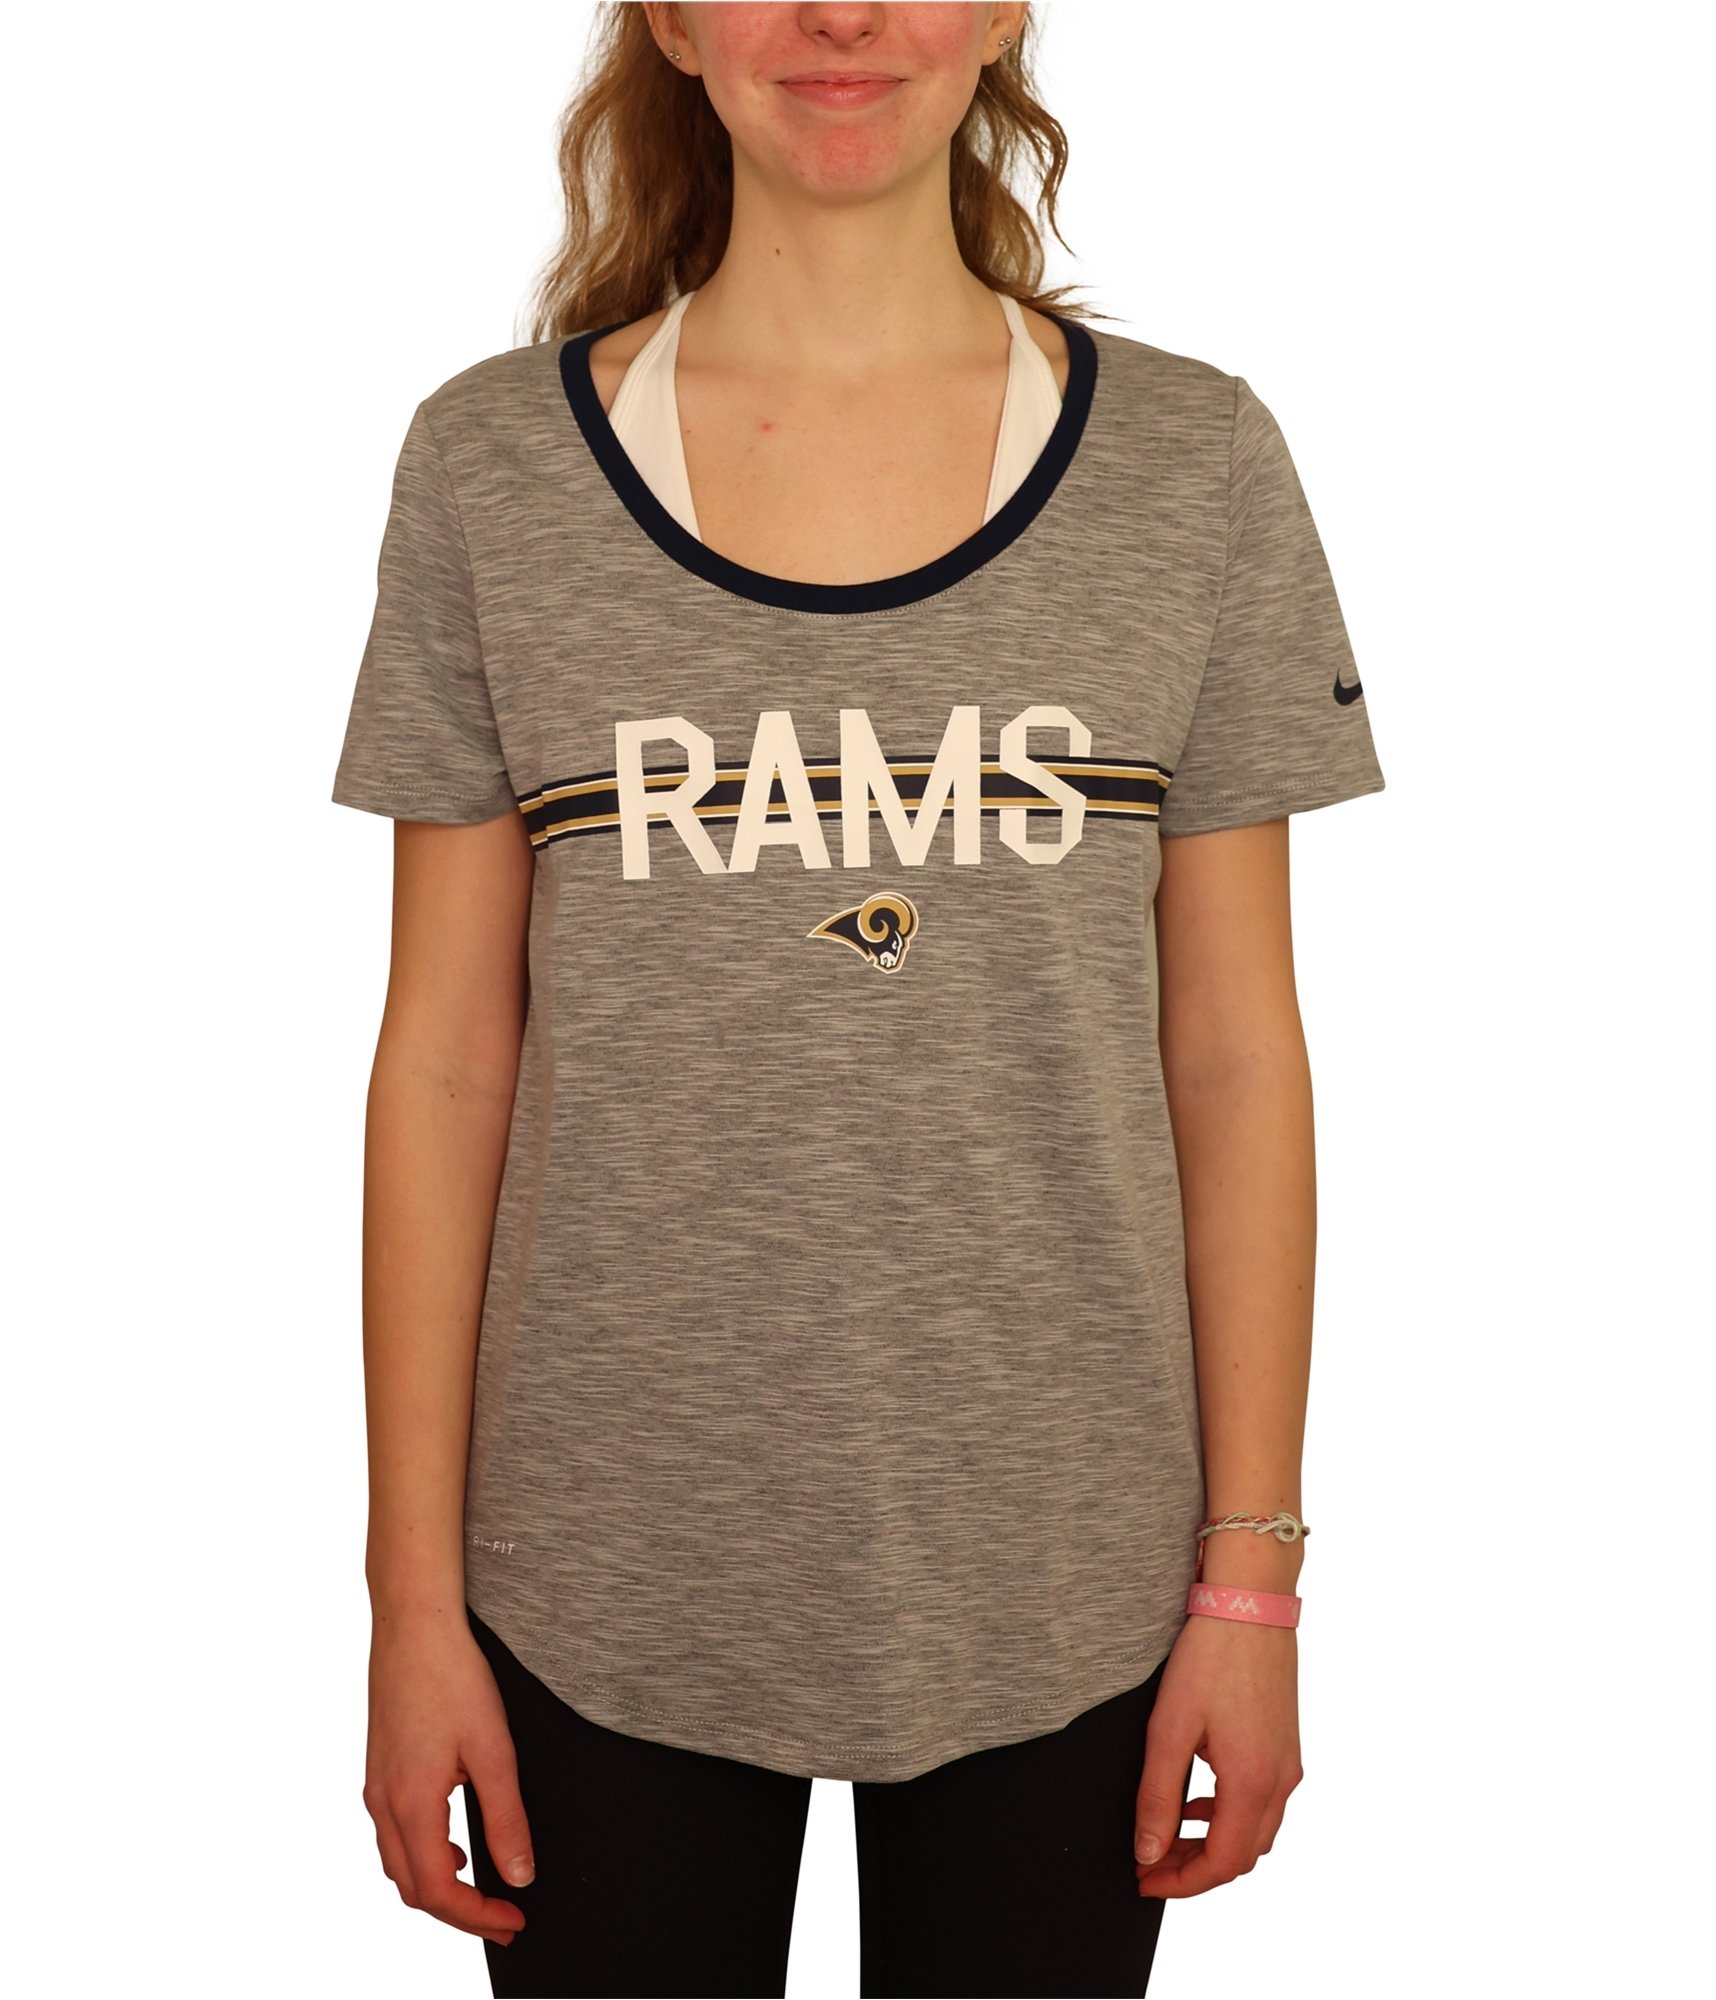 rams women's shirt